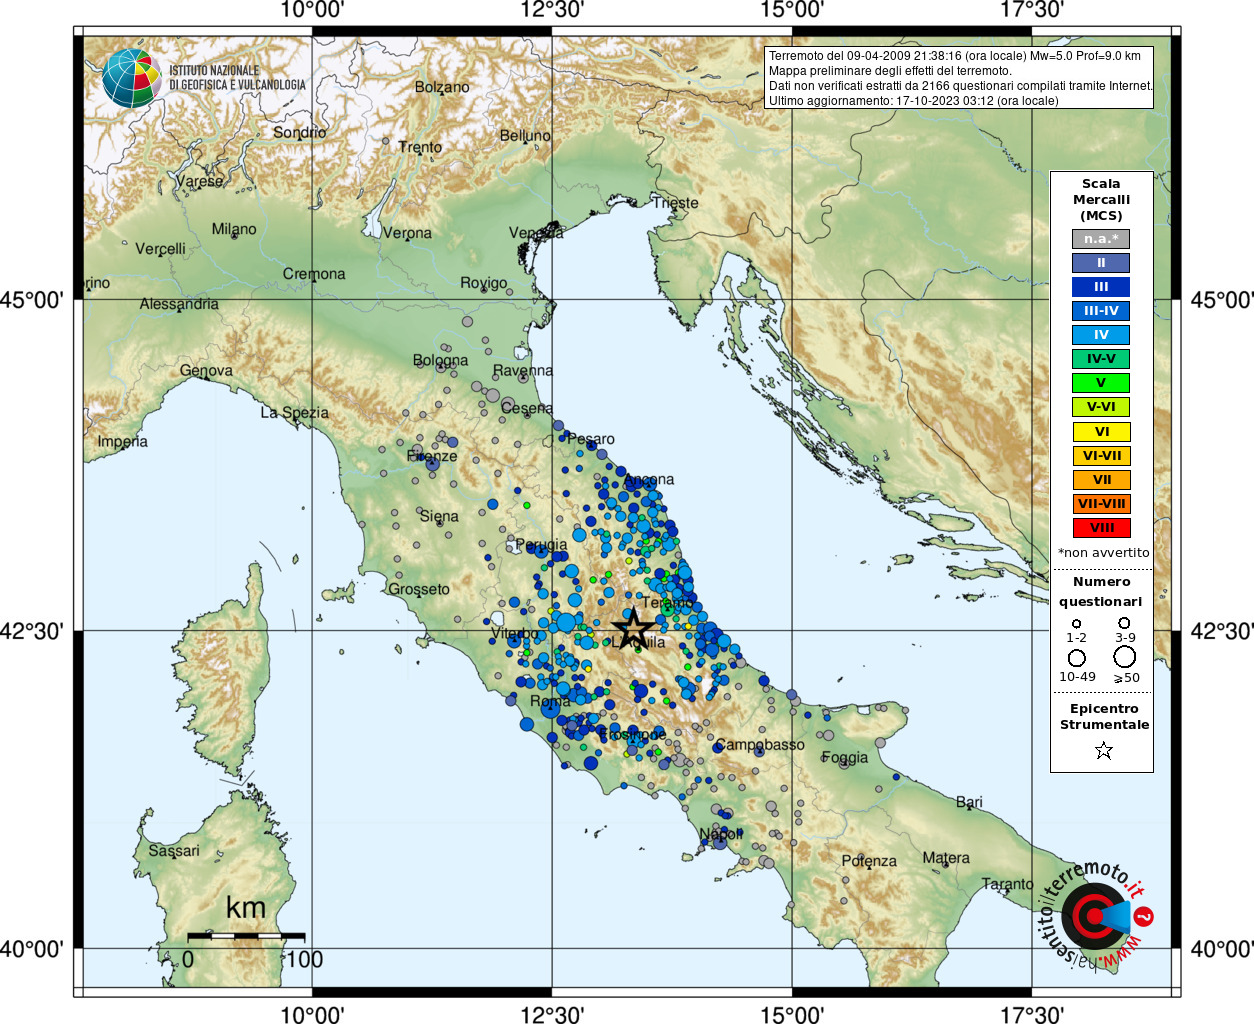 Earthquake 4 km E Capitignano (AQ), Magnitude Mw 5.0, 9 April 2009 time 21:38:16 ...1249 x 1024